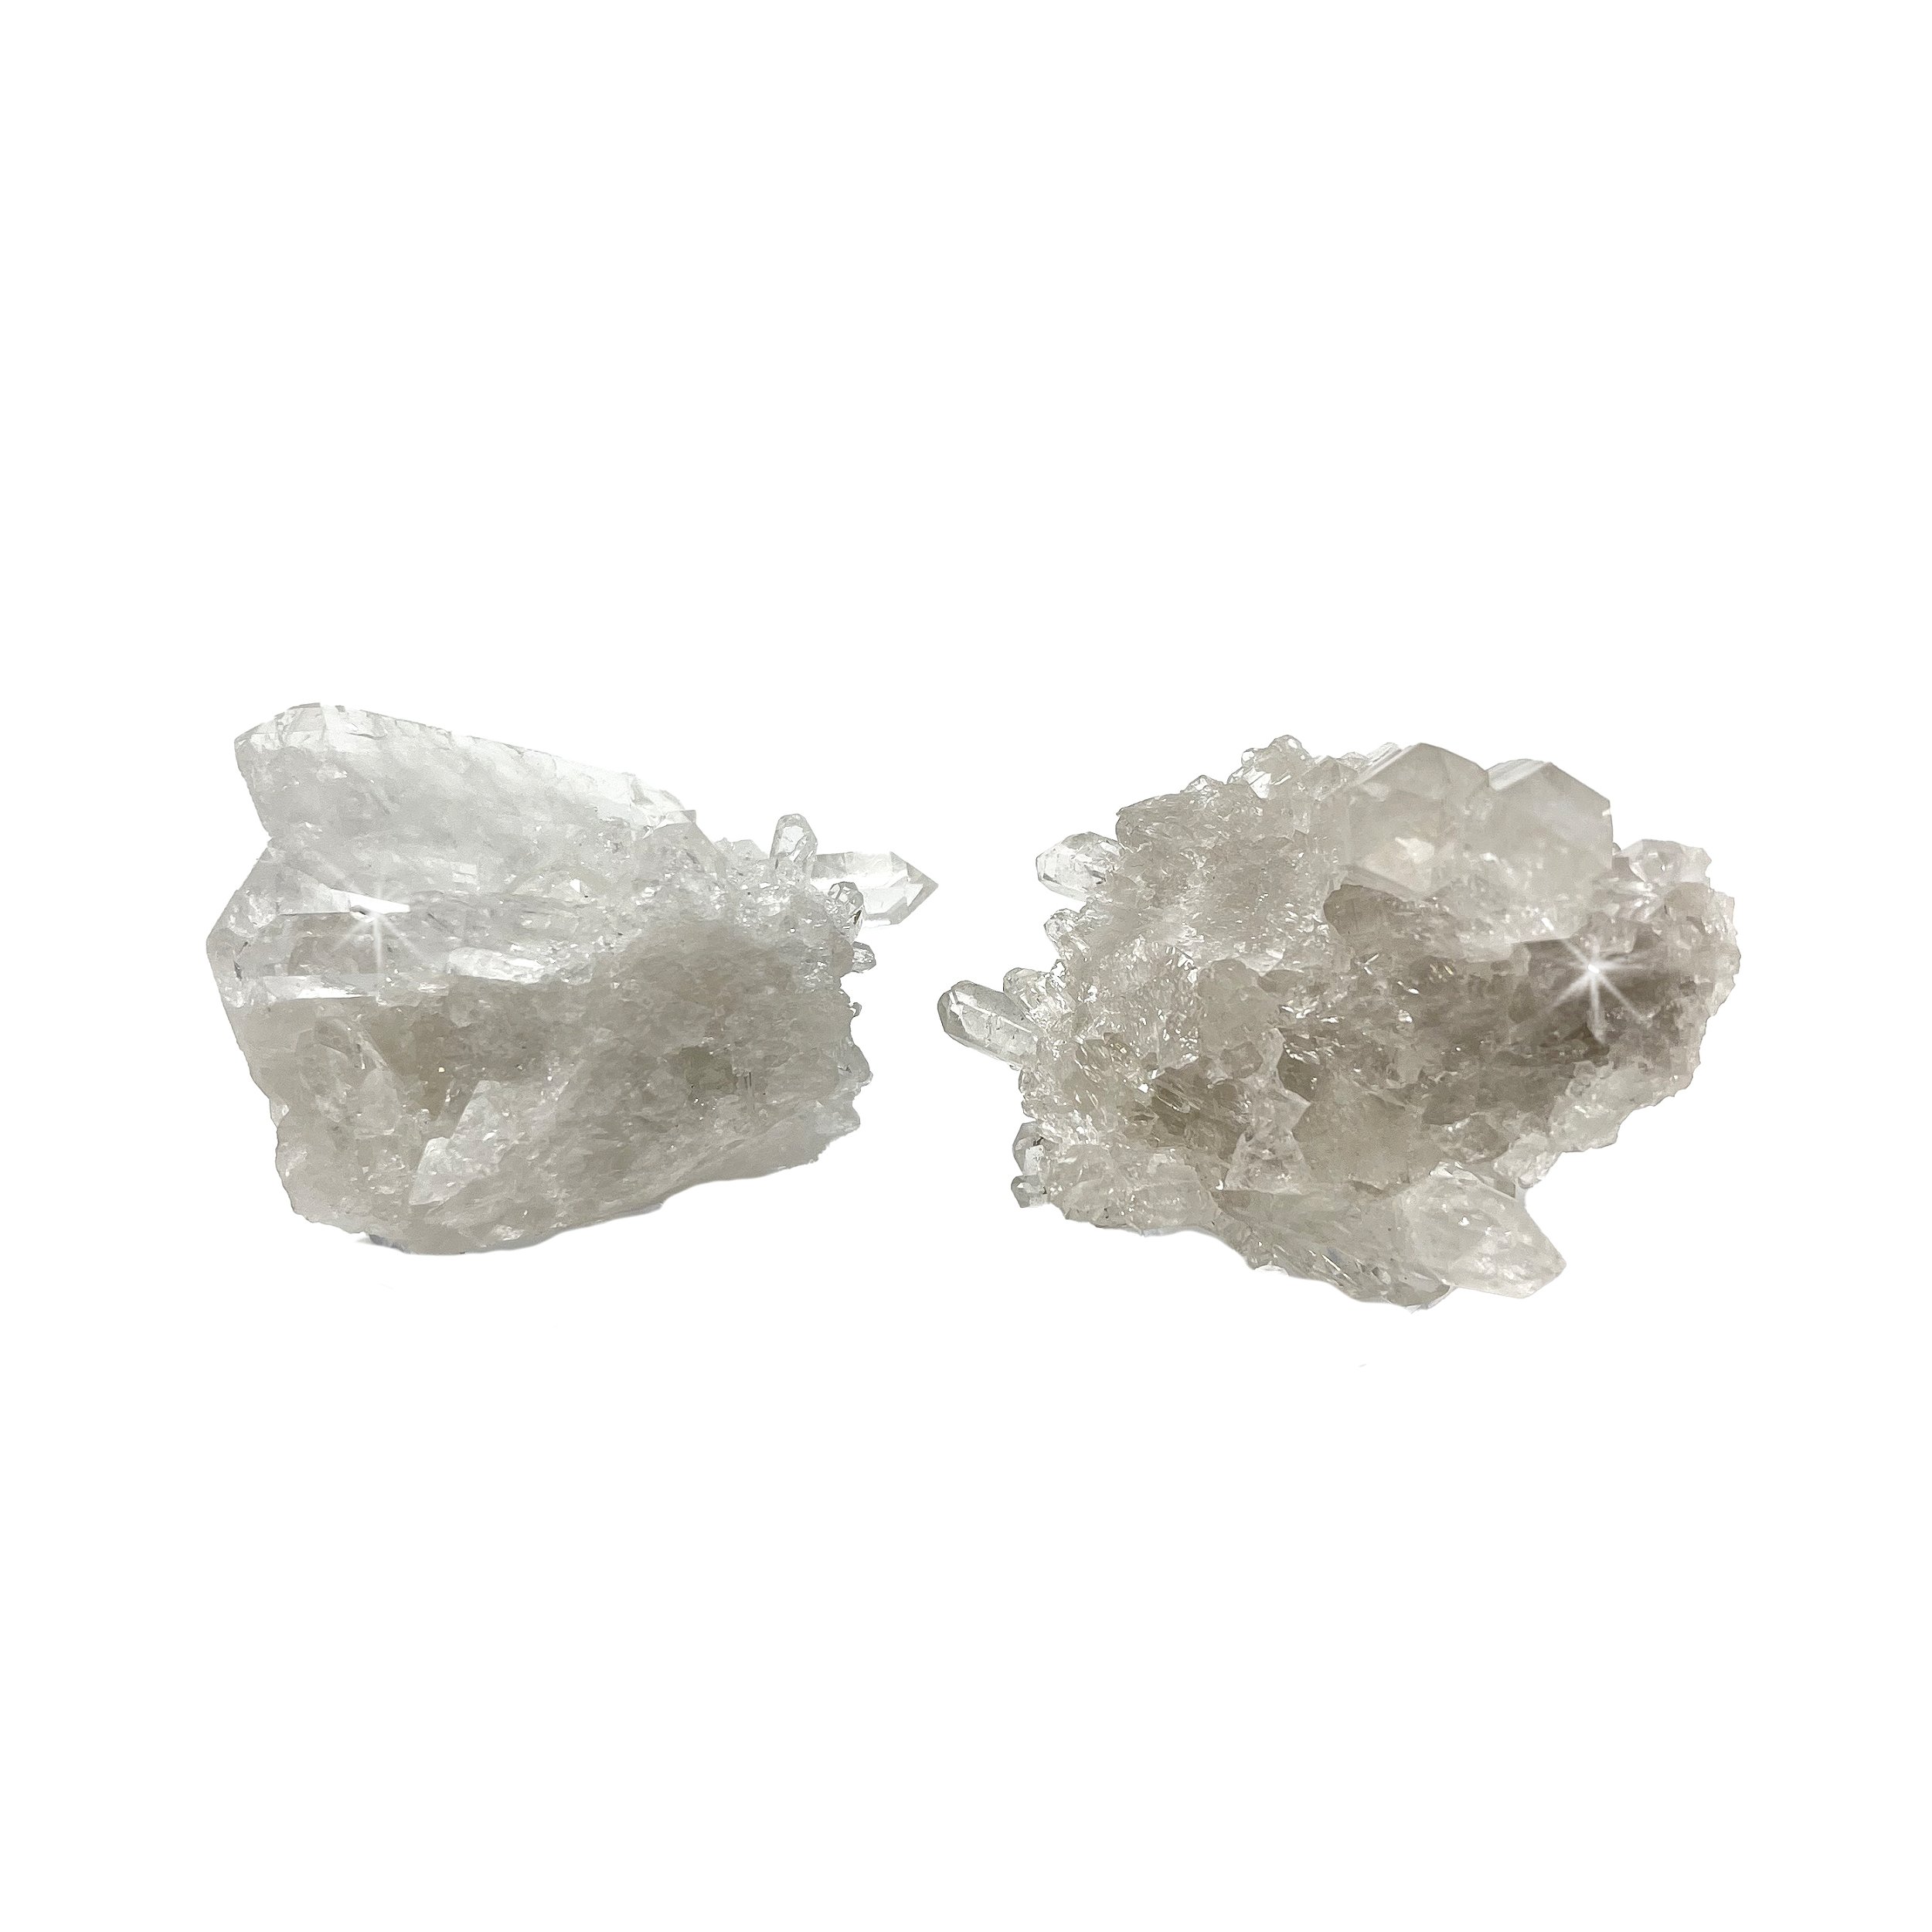 Quartz Cluster - High Clarity - Medium (Sold in Singles)